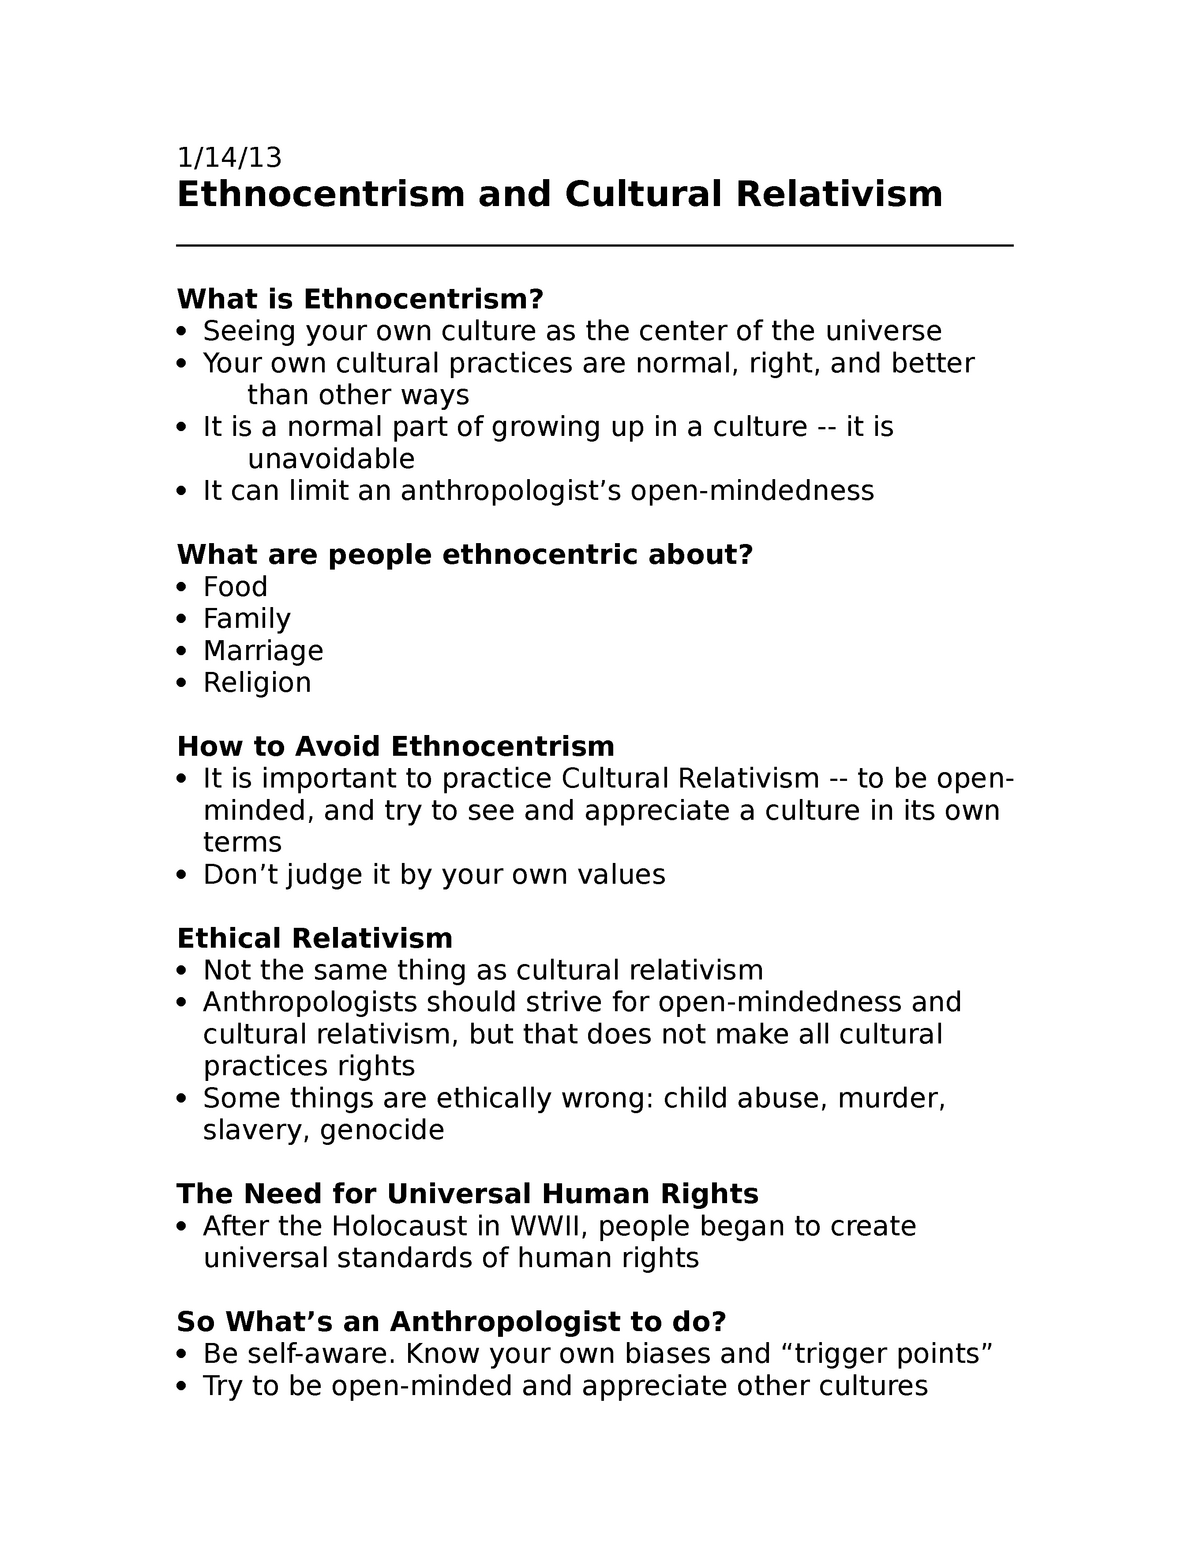 cultural relativism and ethnocentrism essay